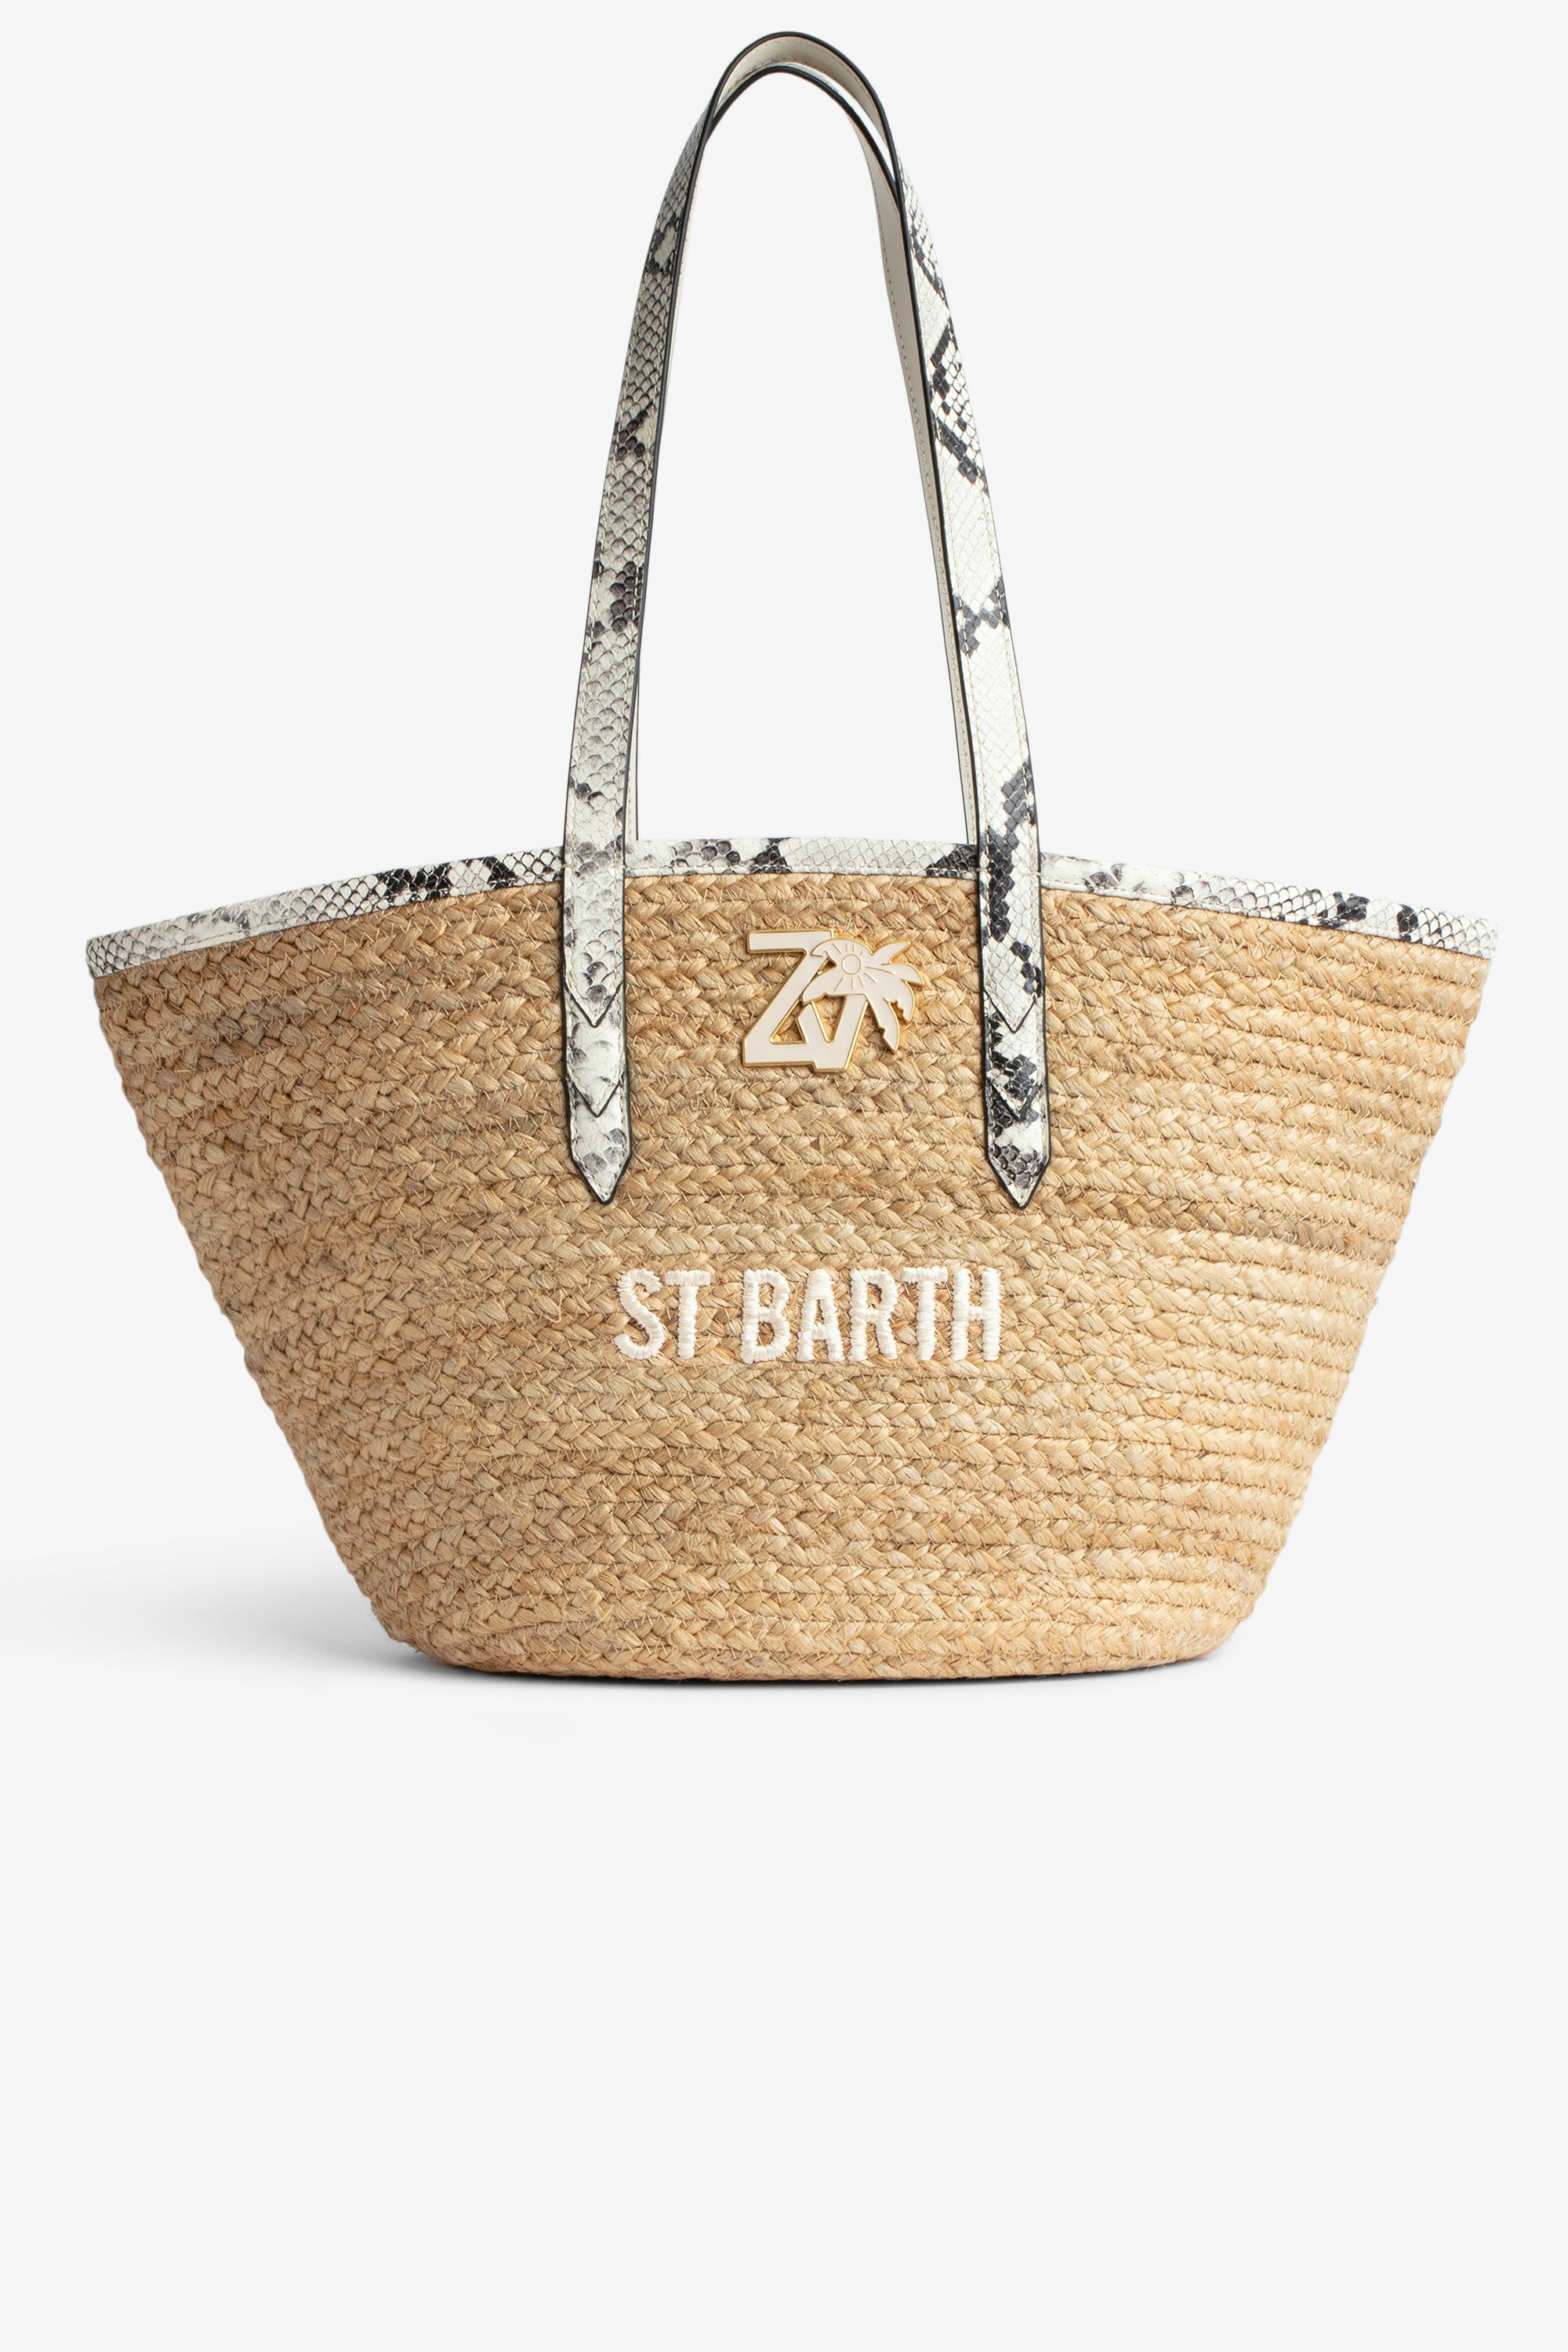 Sac Le Beach Bag Sac en paille à anses en cuir écru effet python, brodé "St Barth" et orné d'un charm ZV Femme